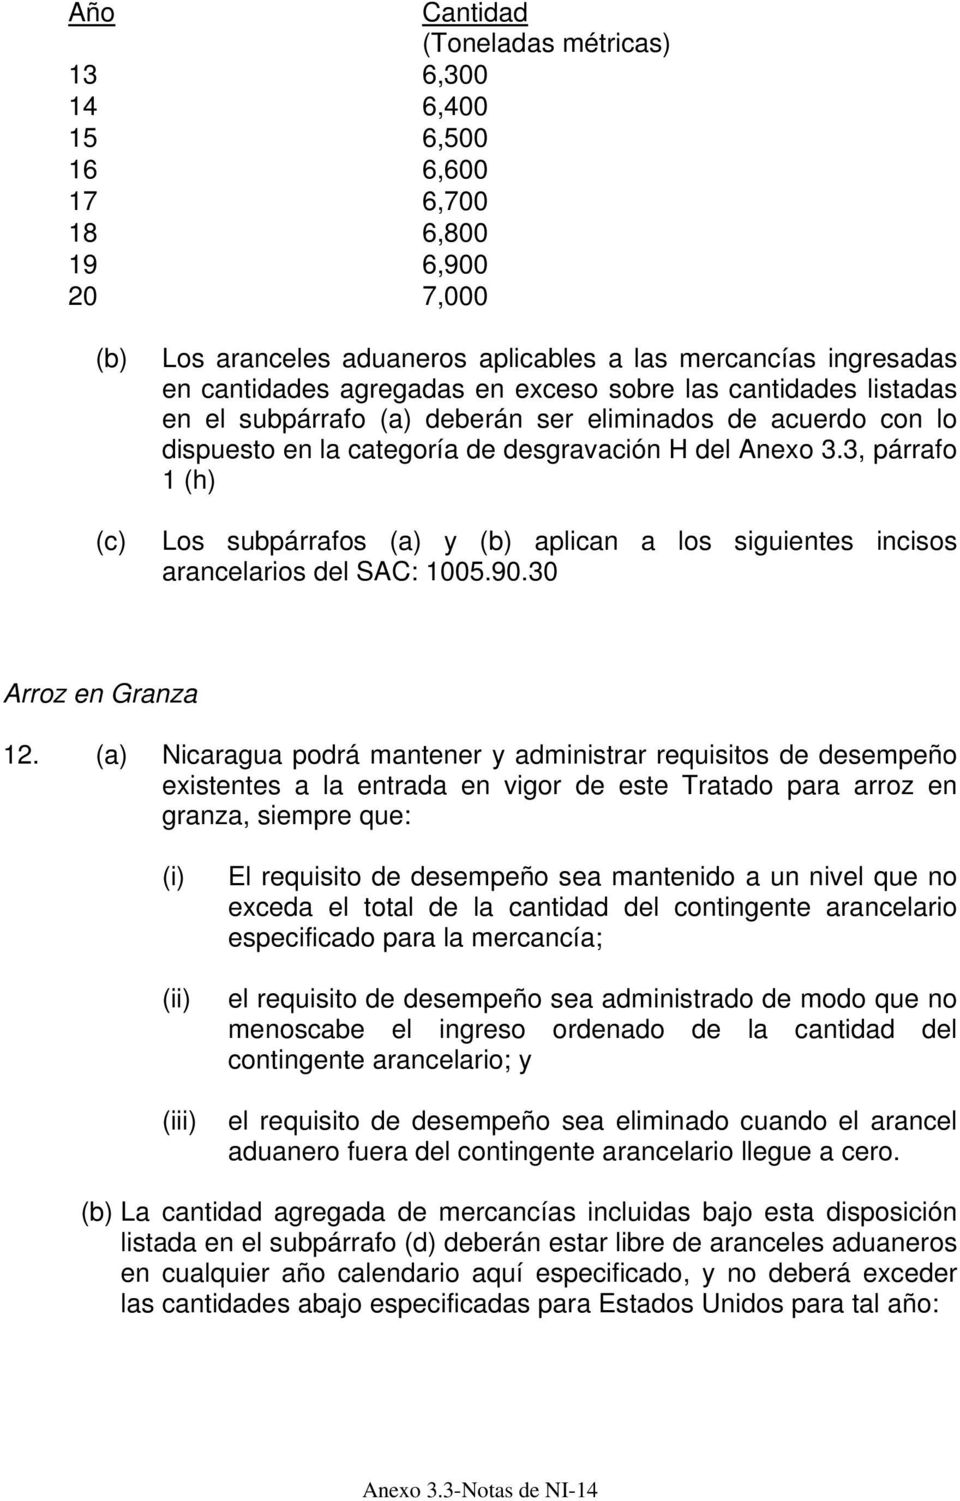 (a) Nicaragua podrá mantener y administrar requisitos de desempeño existentes a la entrada en vigor de este Tratado para arroz en granza, siempre que: (i) (ii) (iii) El requisito de desempeño sea